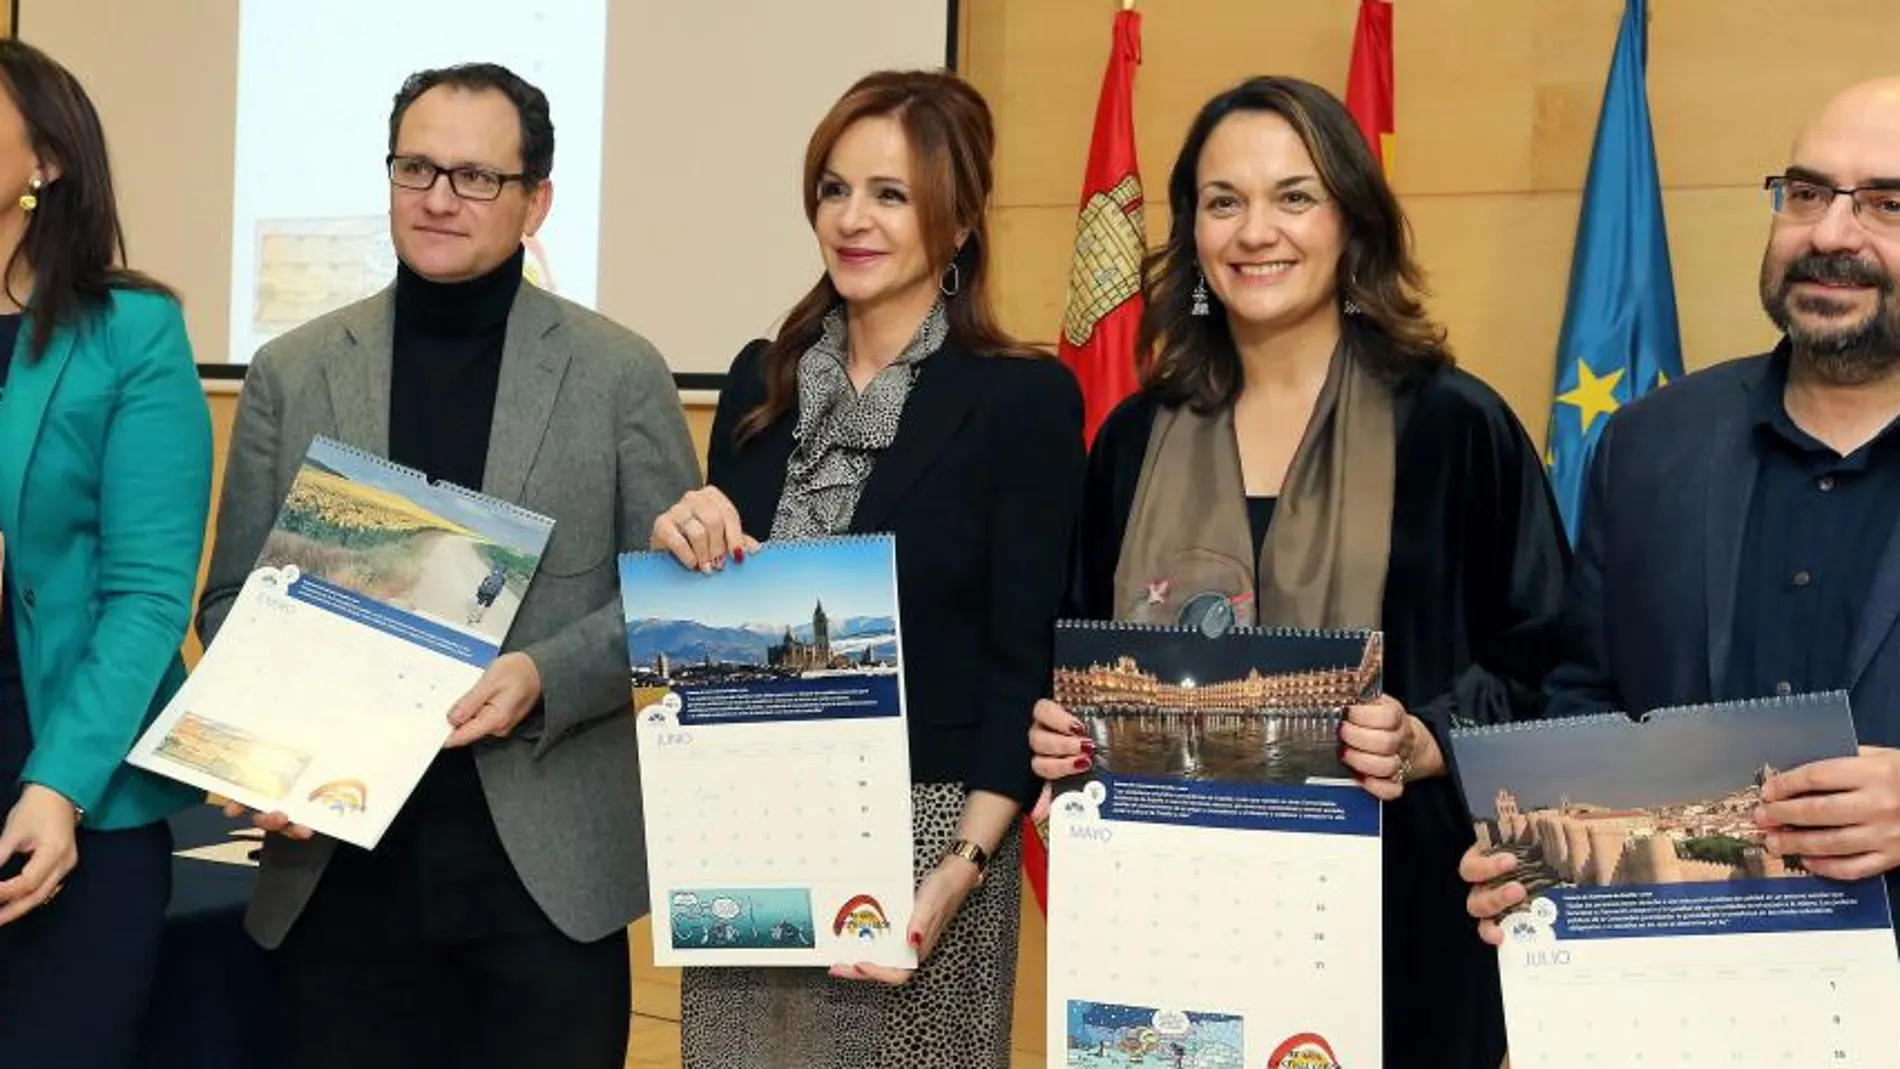 La presidenta de las Cortes de Castilla y León, Silvia Clemente, presenta el calendario conmemorativo del XXXV Aniversario del Estatuto de Autonomía